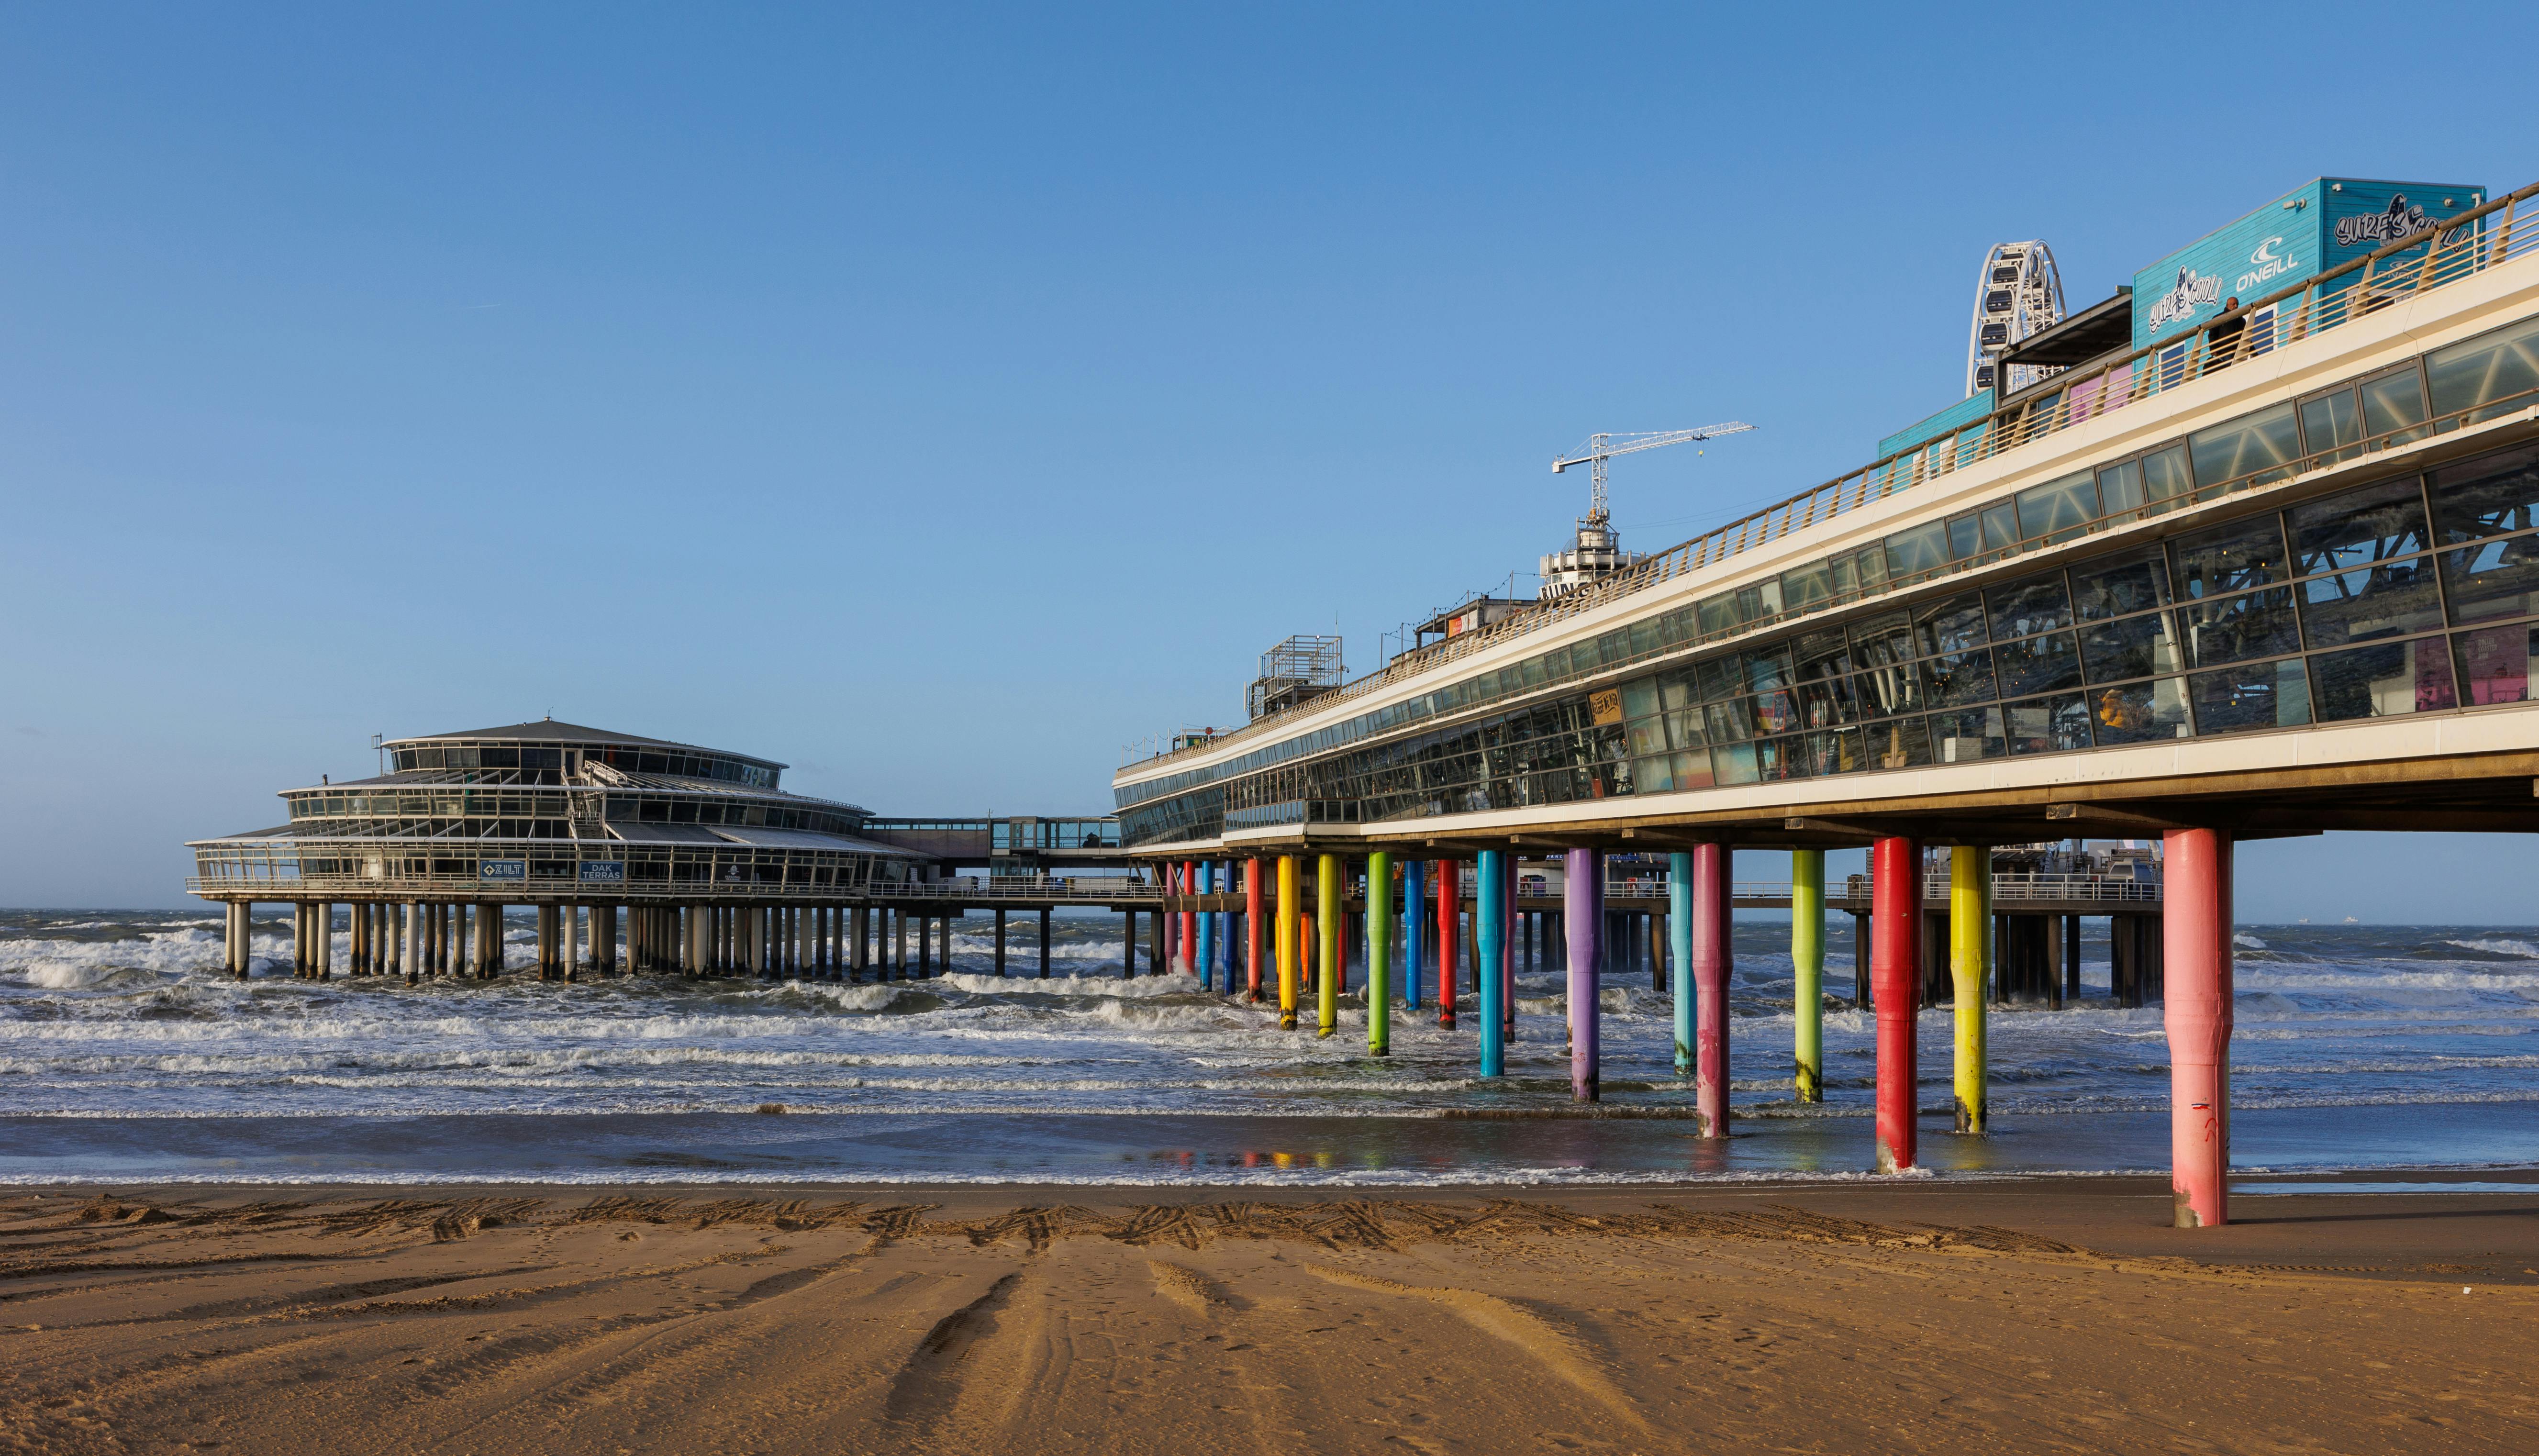 Colorful Pillars of De Pier in Resort Town of Scheveningen Netherlands ·  Free Stock Photo